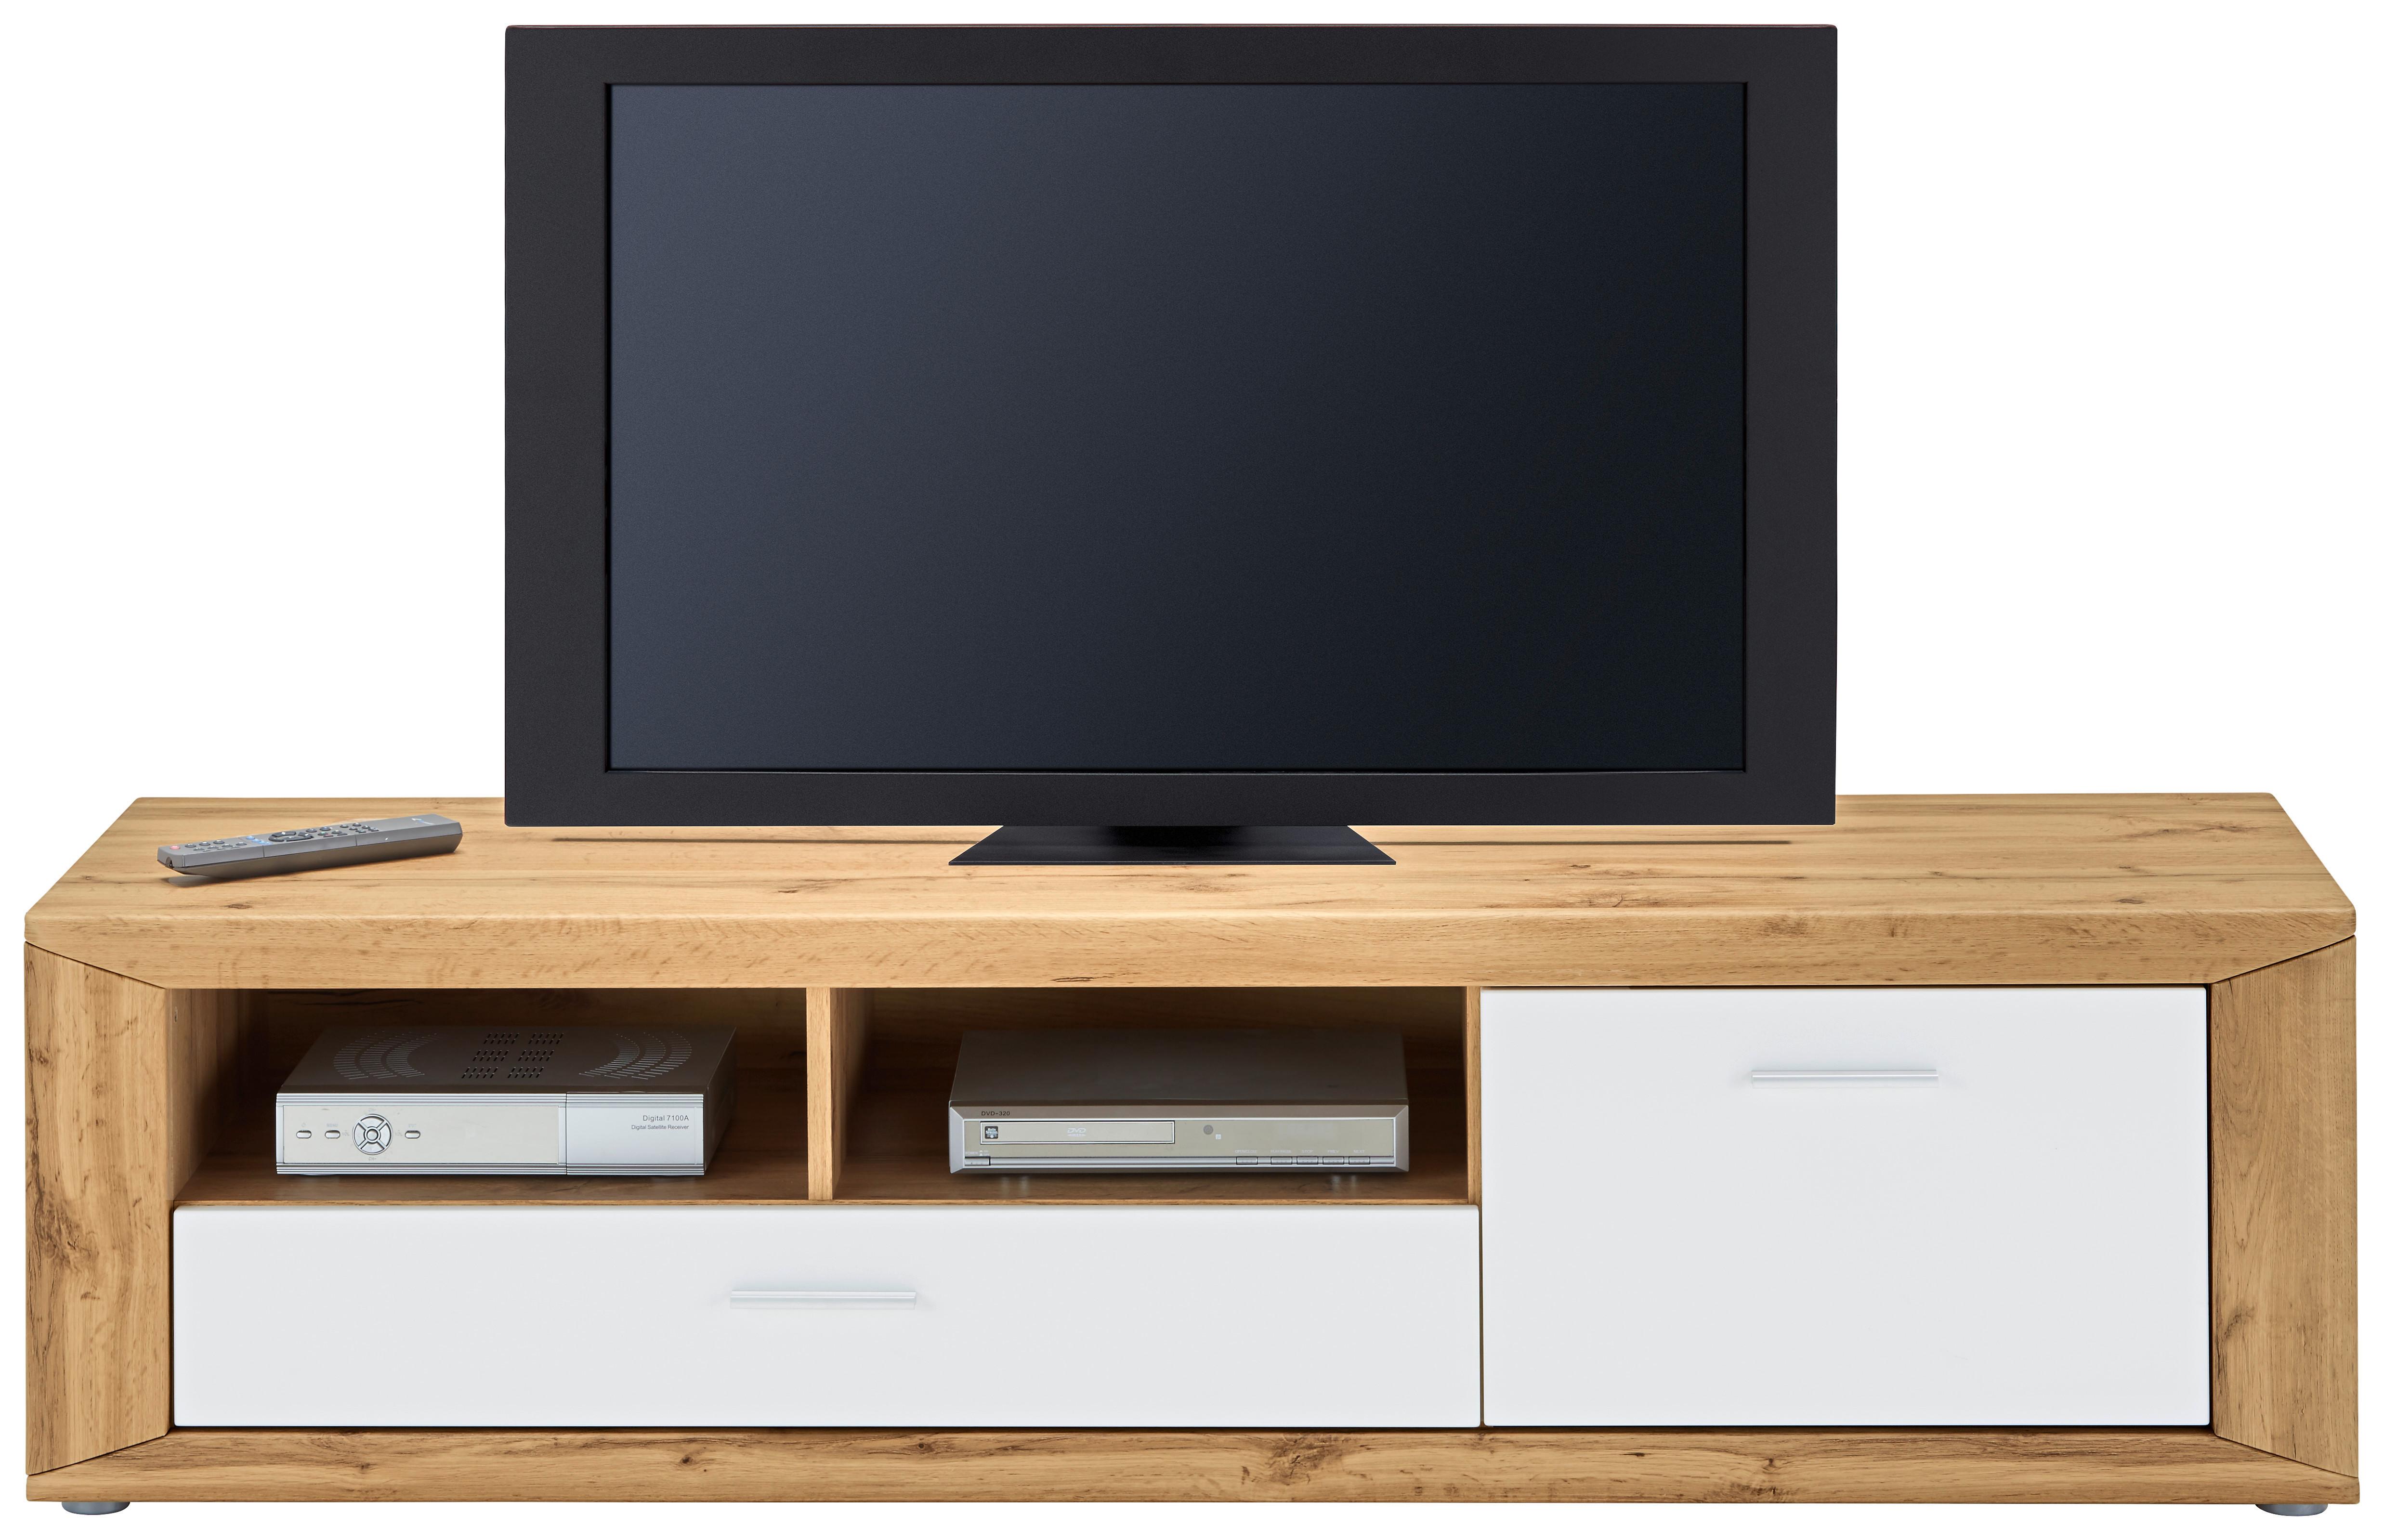 TV-Element in Eichefarben - Eichefarben/Silberfarben, KONVENTIONELL, Holzwerkstoff/Kunststoff (160/42,5/45cm) - Modern Living